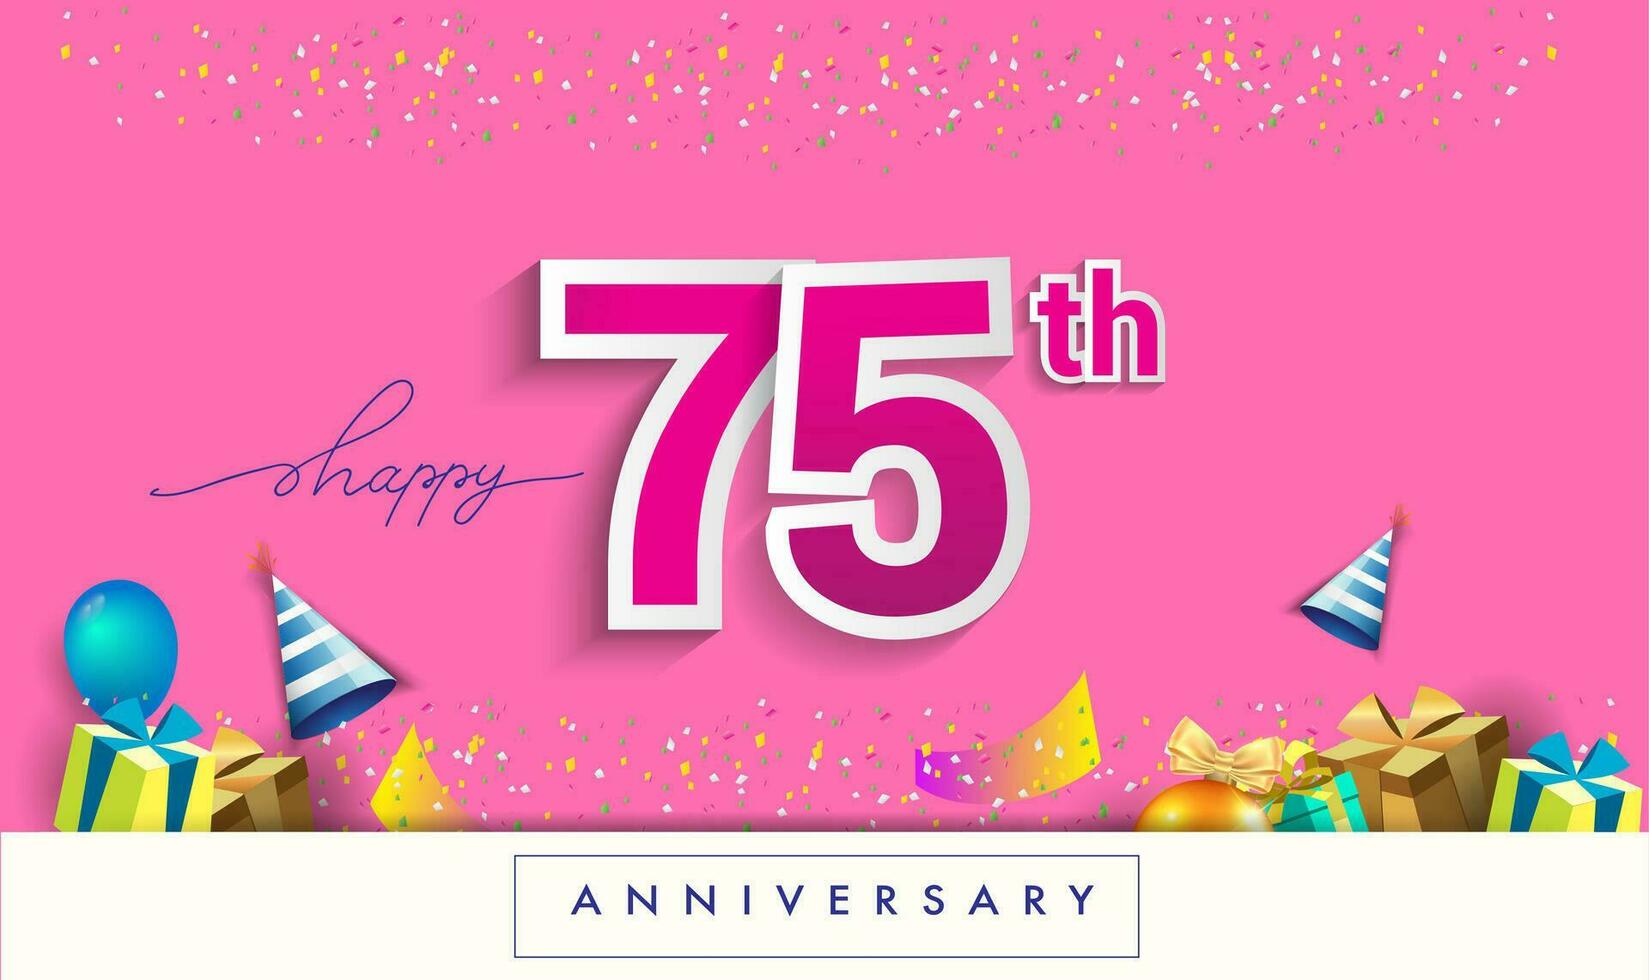 75:e år årsdag firande design, med gåva låda och ballonger, band, färgrik vektor mall element för din födelsedag fira fest.